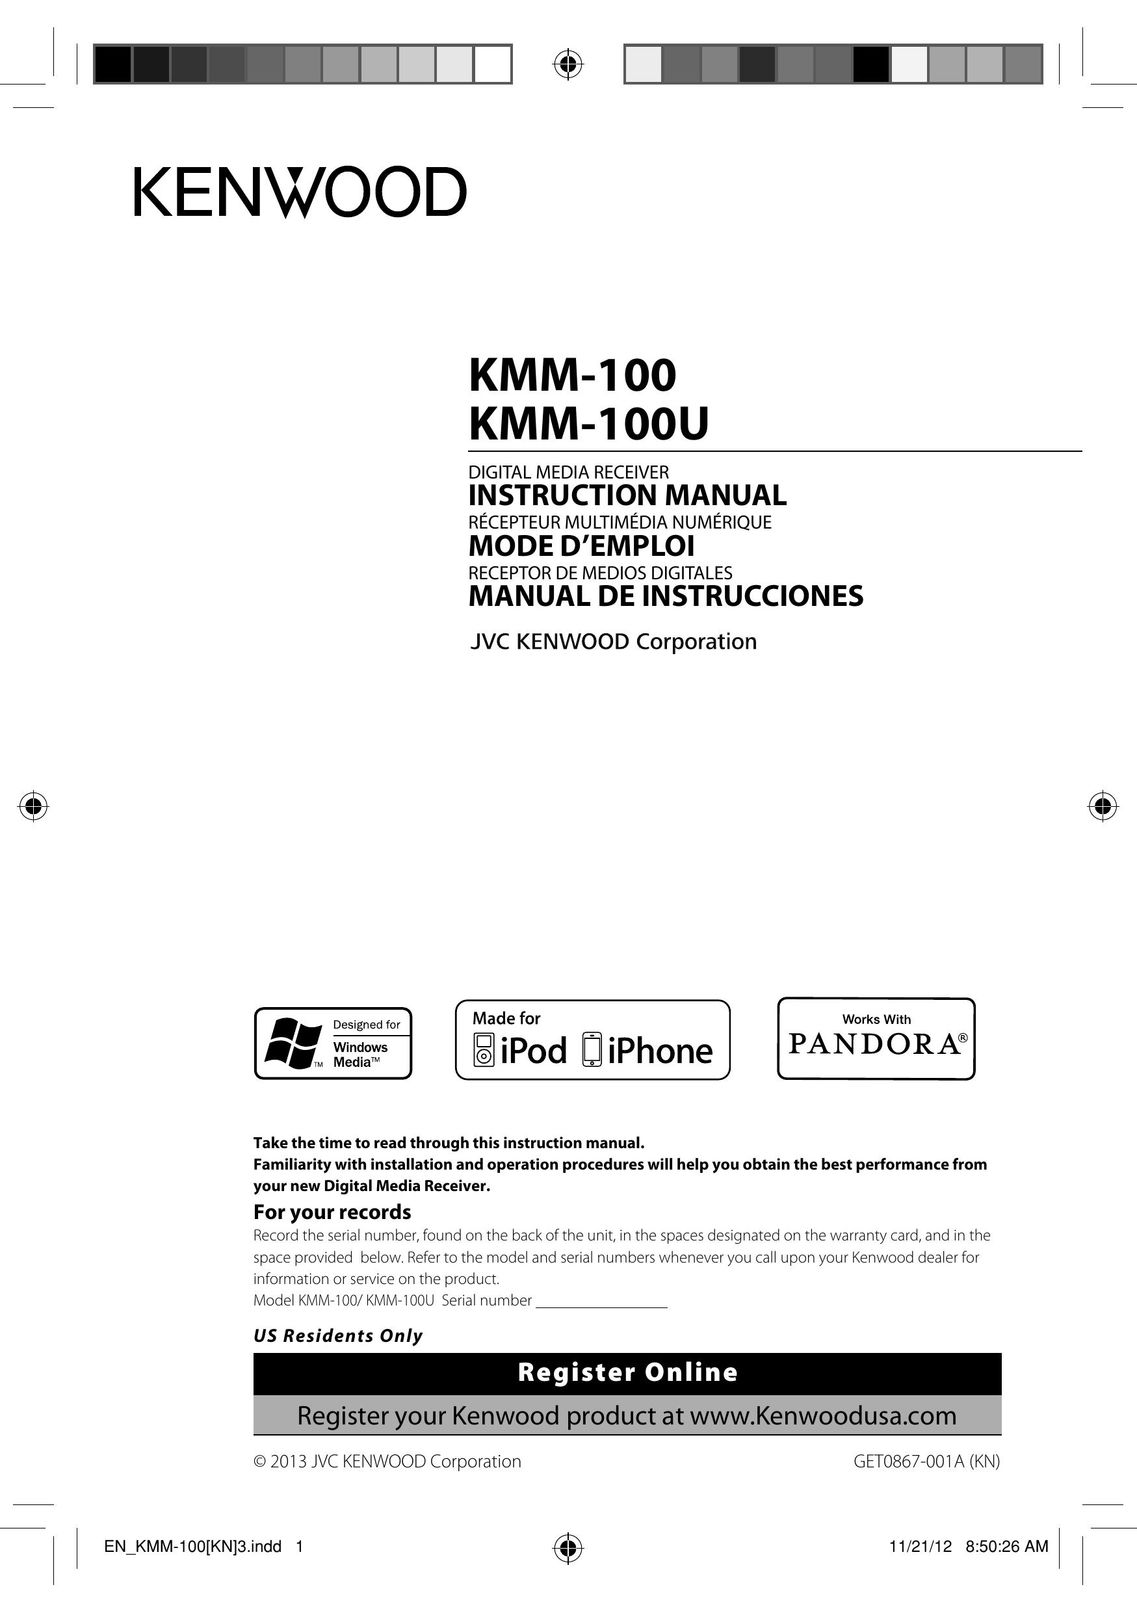 Kenwood KMM-100U Stereo Receiver User Manual